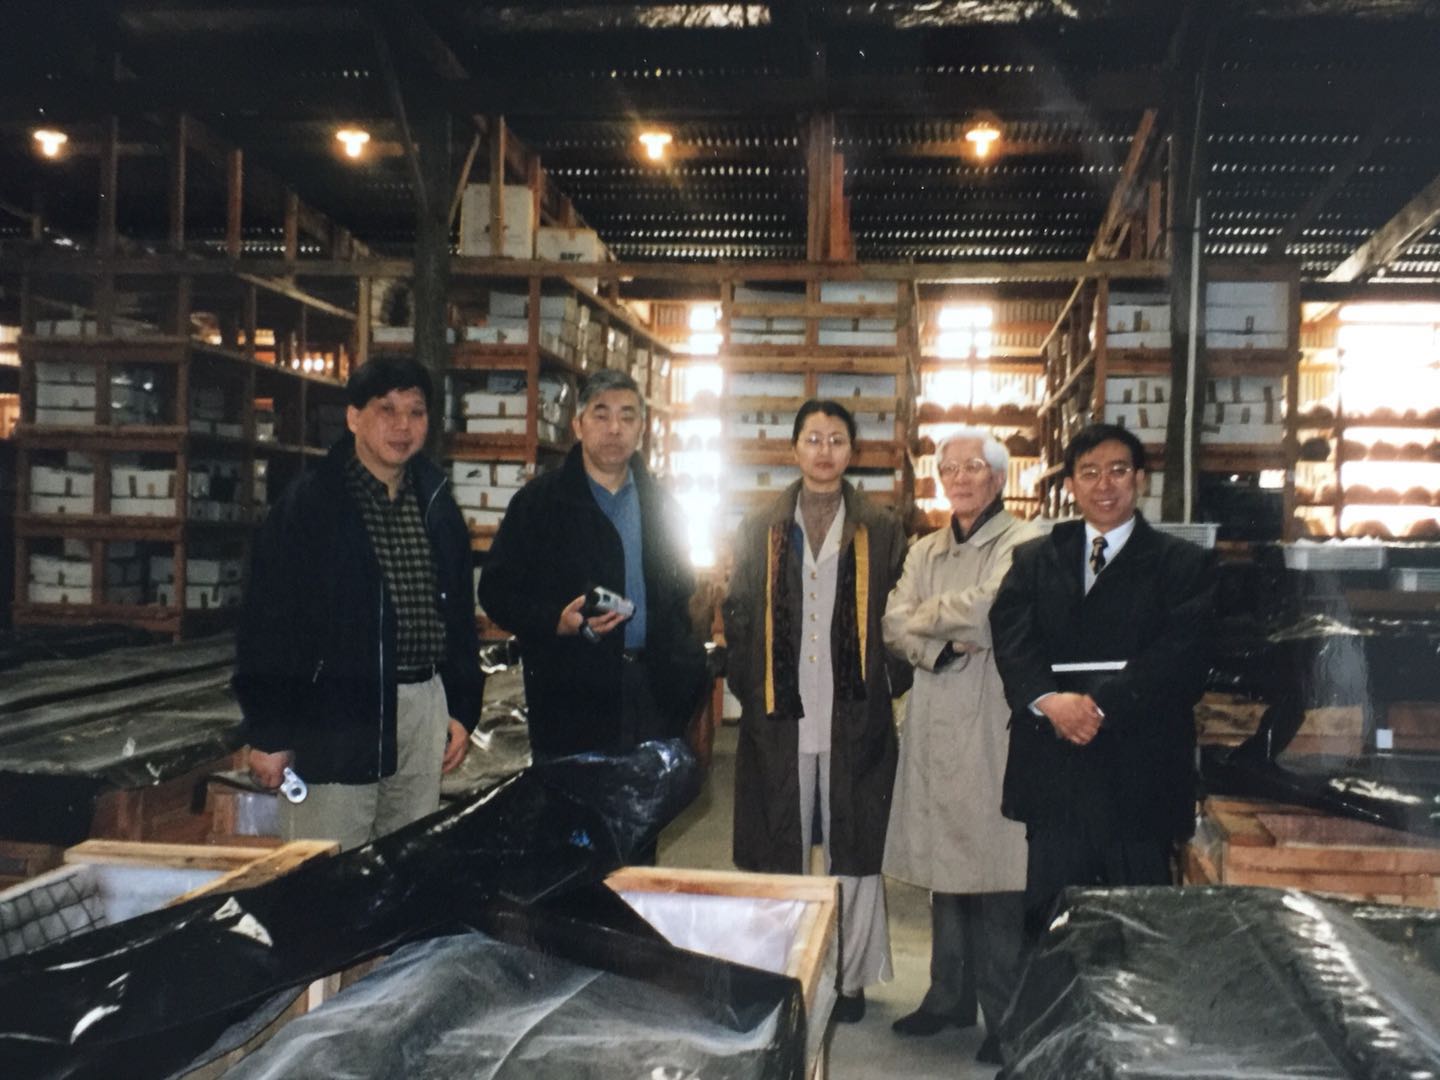 上海博物馆代表团一行5人在新西兰“黑石号”文物仓库（从左至右分别为：陈克伦、许勇翔、周燕群、汪庆正、陈燮君）